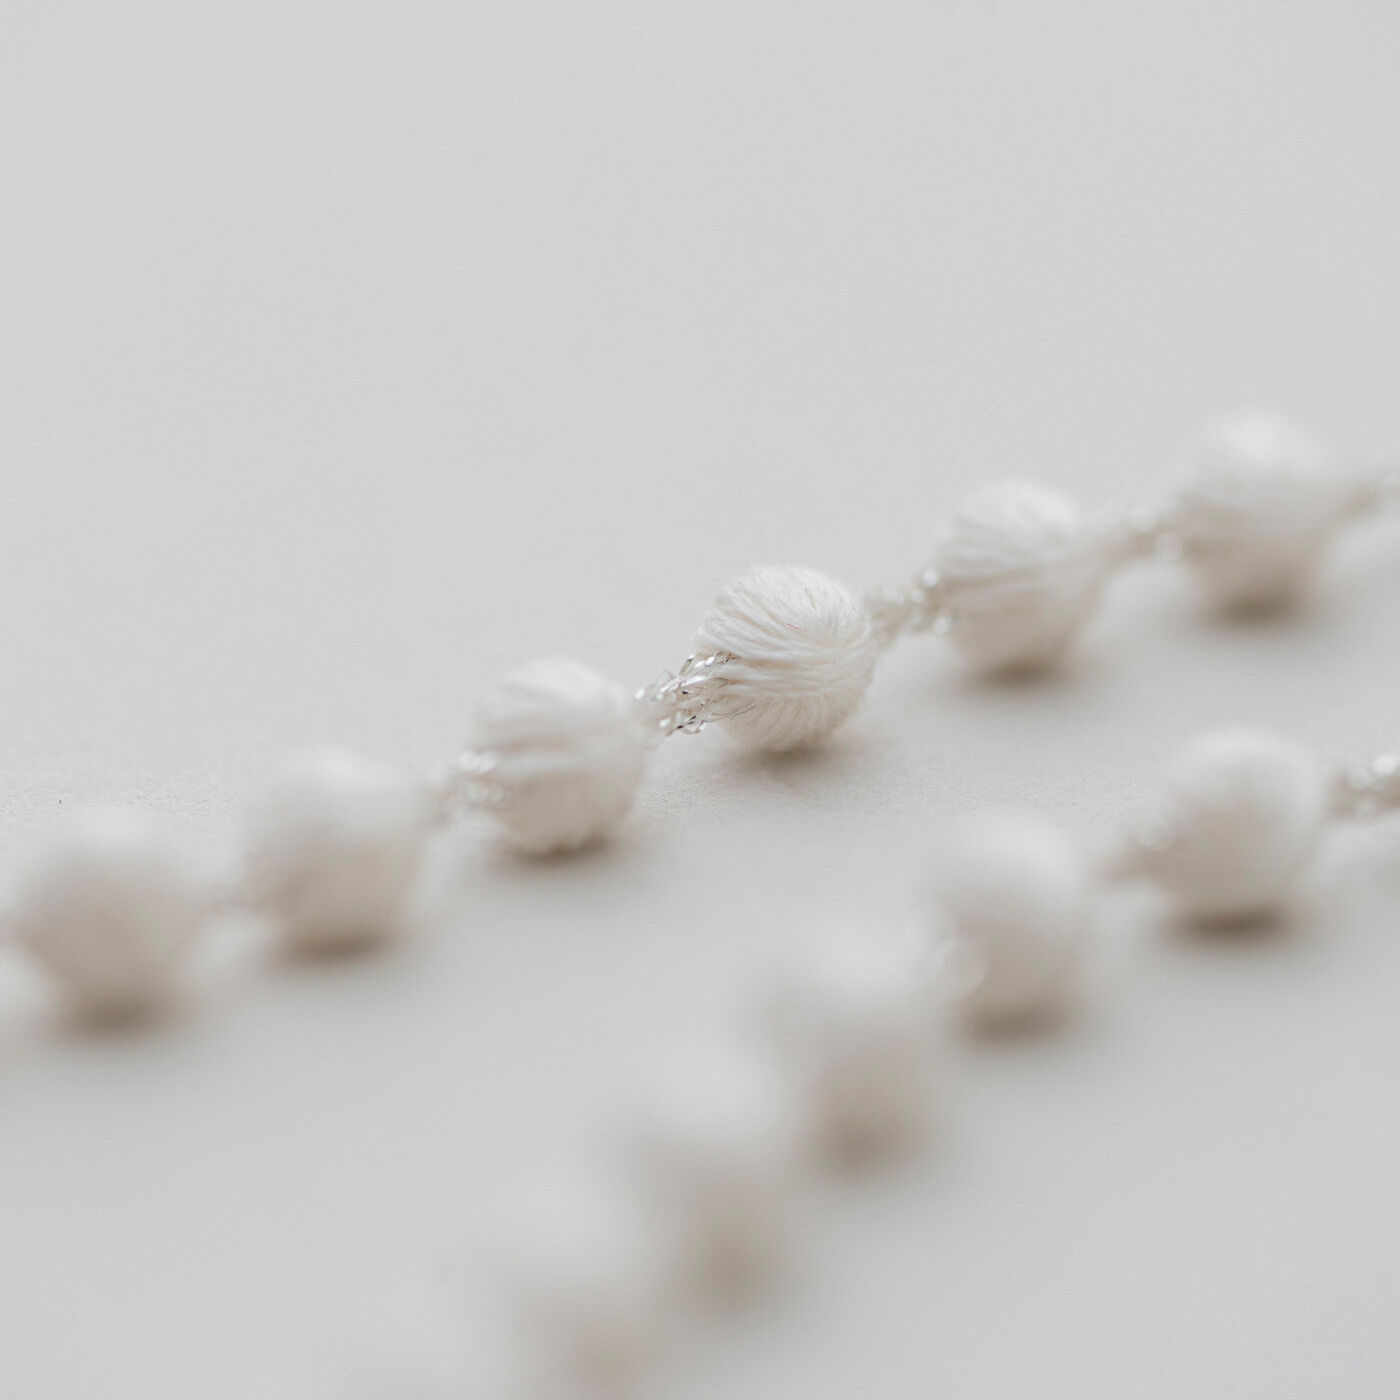 群馬の刺繍工房が作った 糸の宝石の衿飾りネックレス〈アイボリー